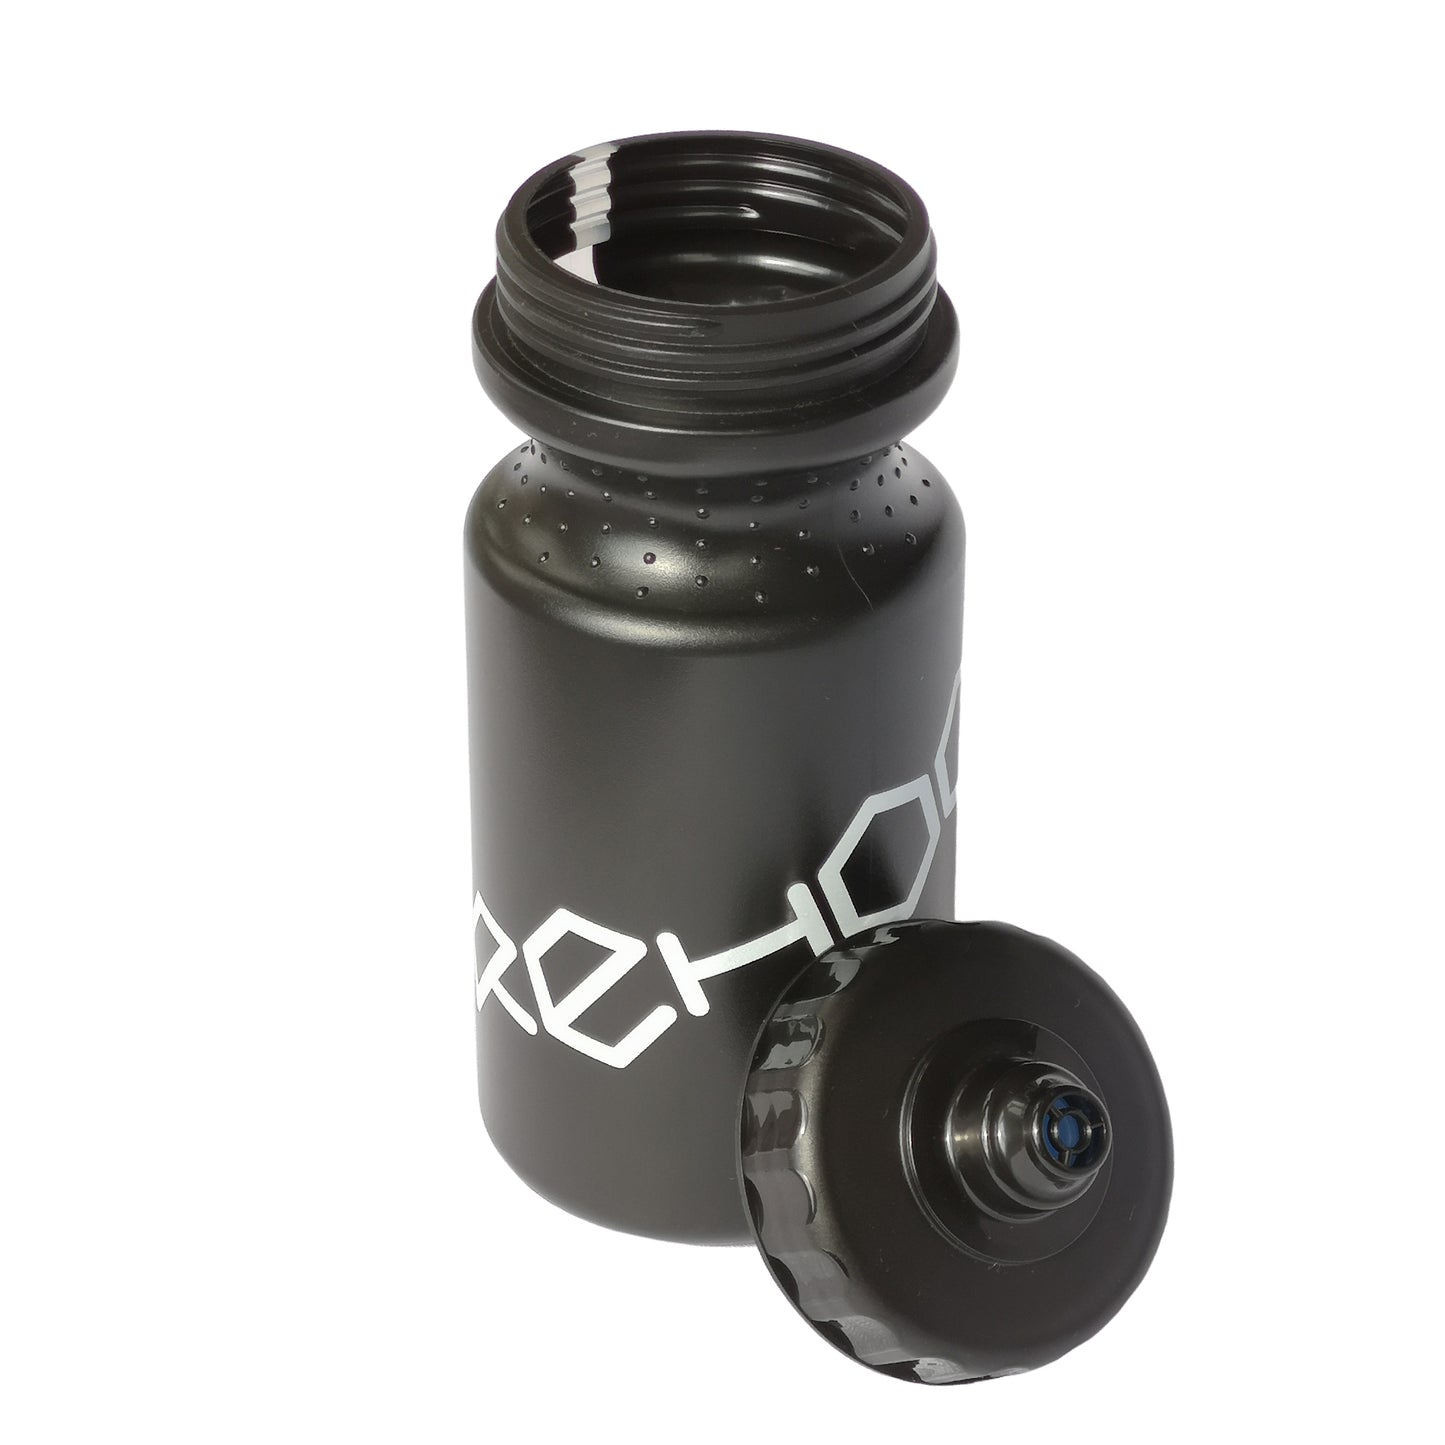 Rehook Cycling Water Bottle 500ml